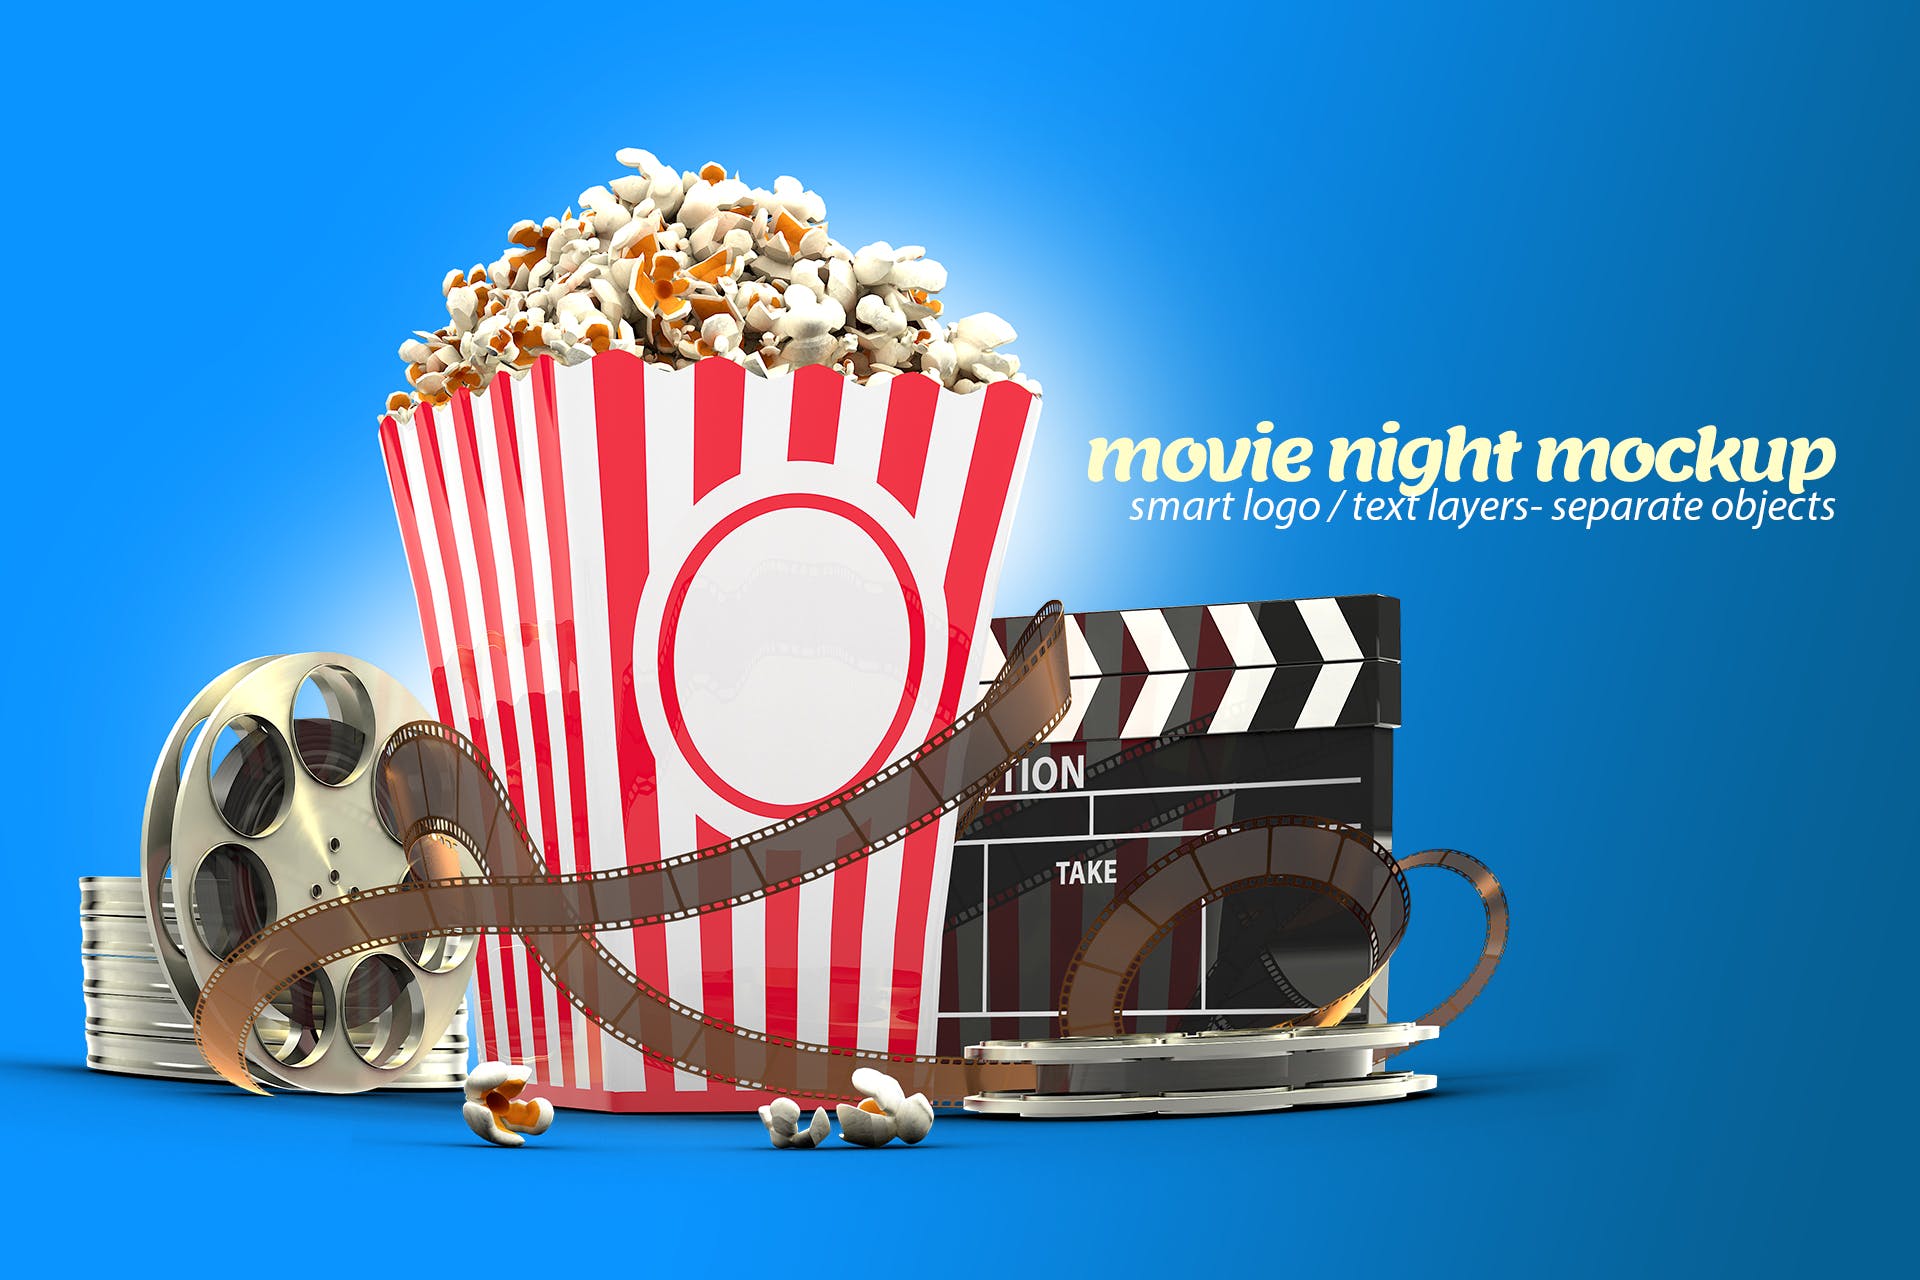 电影之夜爆米花电影院场景样机模板 Movie Night Mockup插图